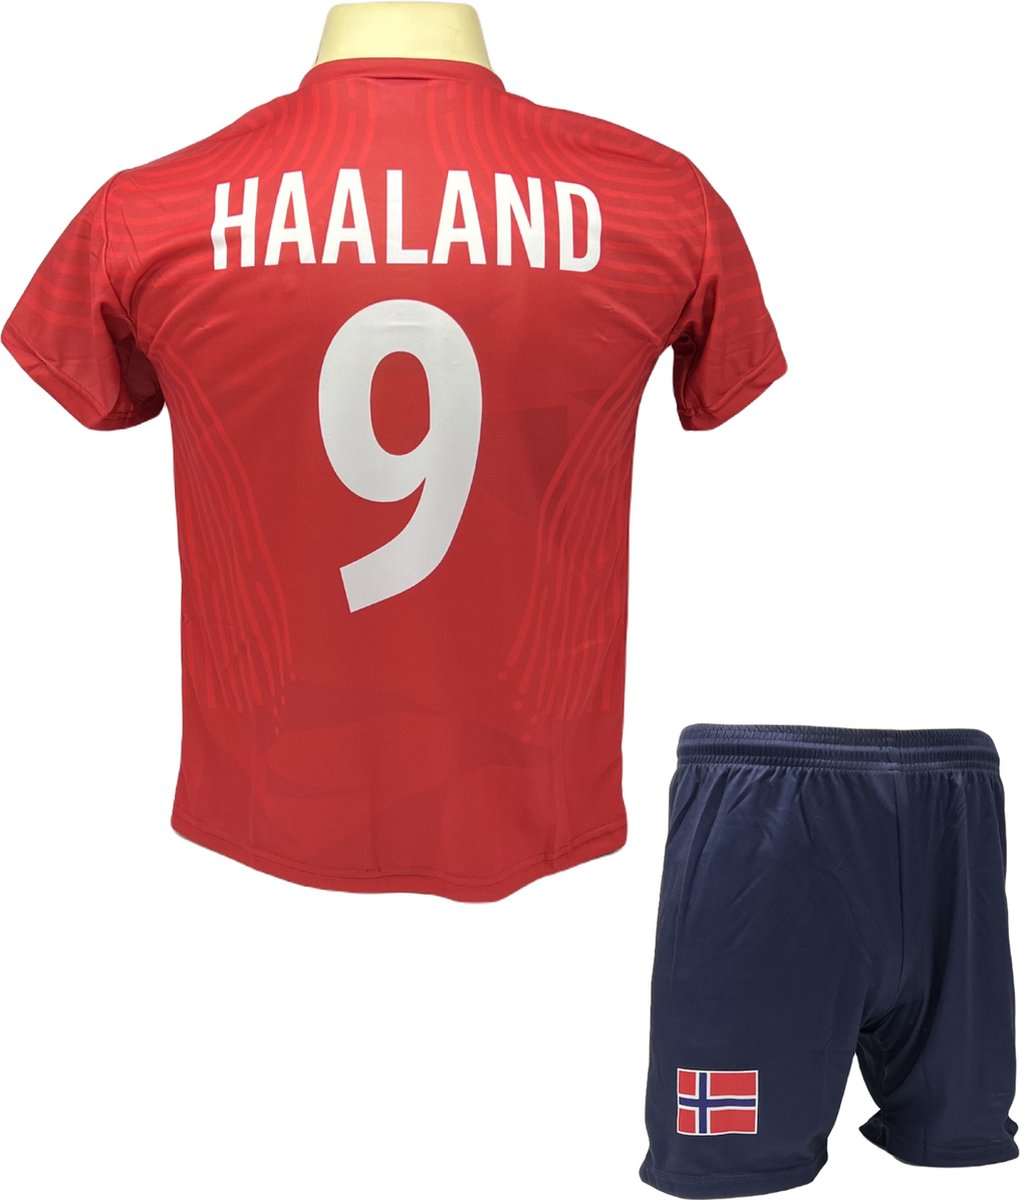 Haaland Voetbalshirt en Broekje Voetbaltenue Noorwegen - Maat L